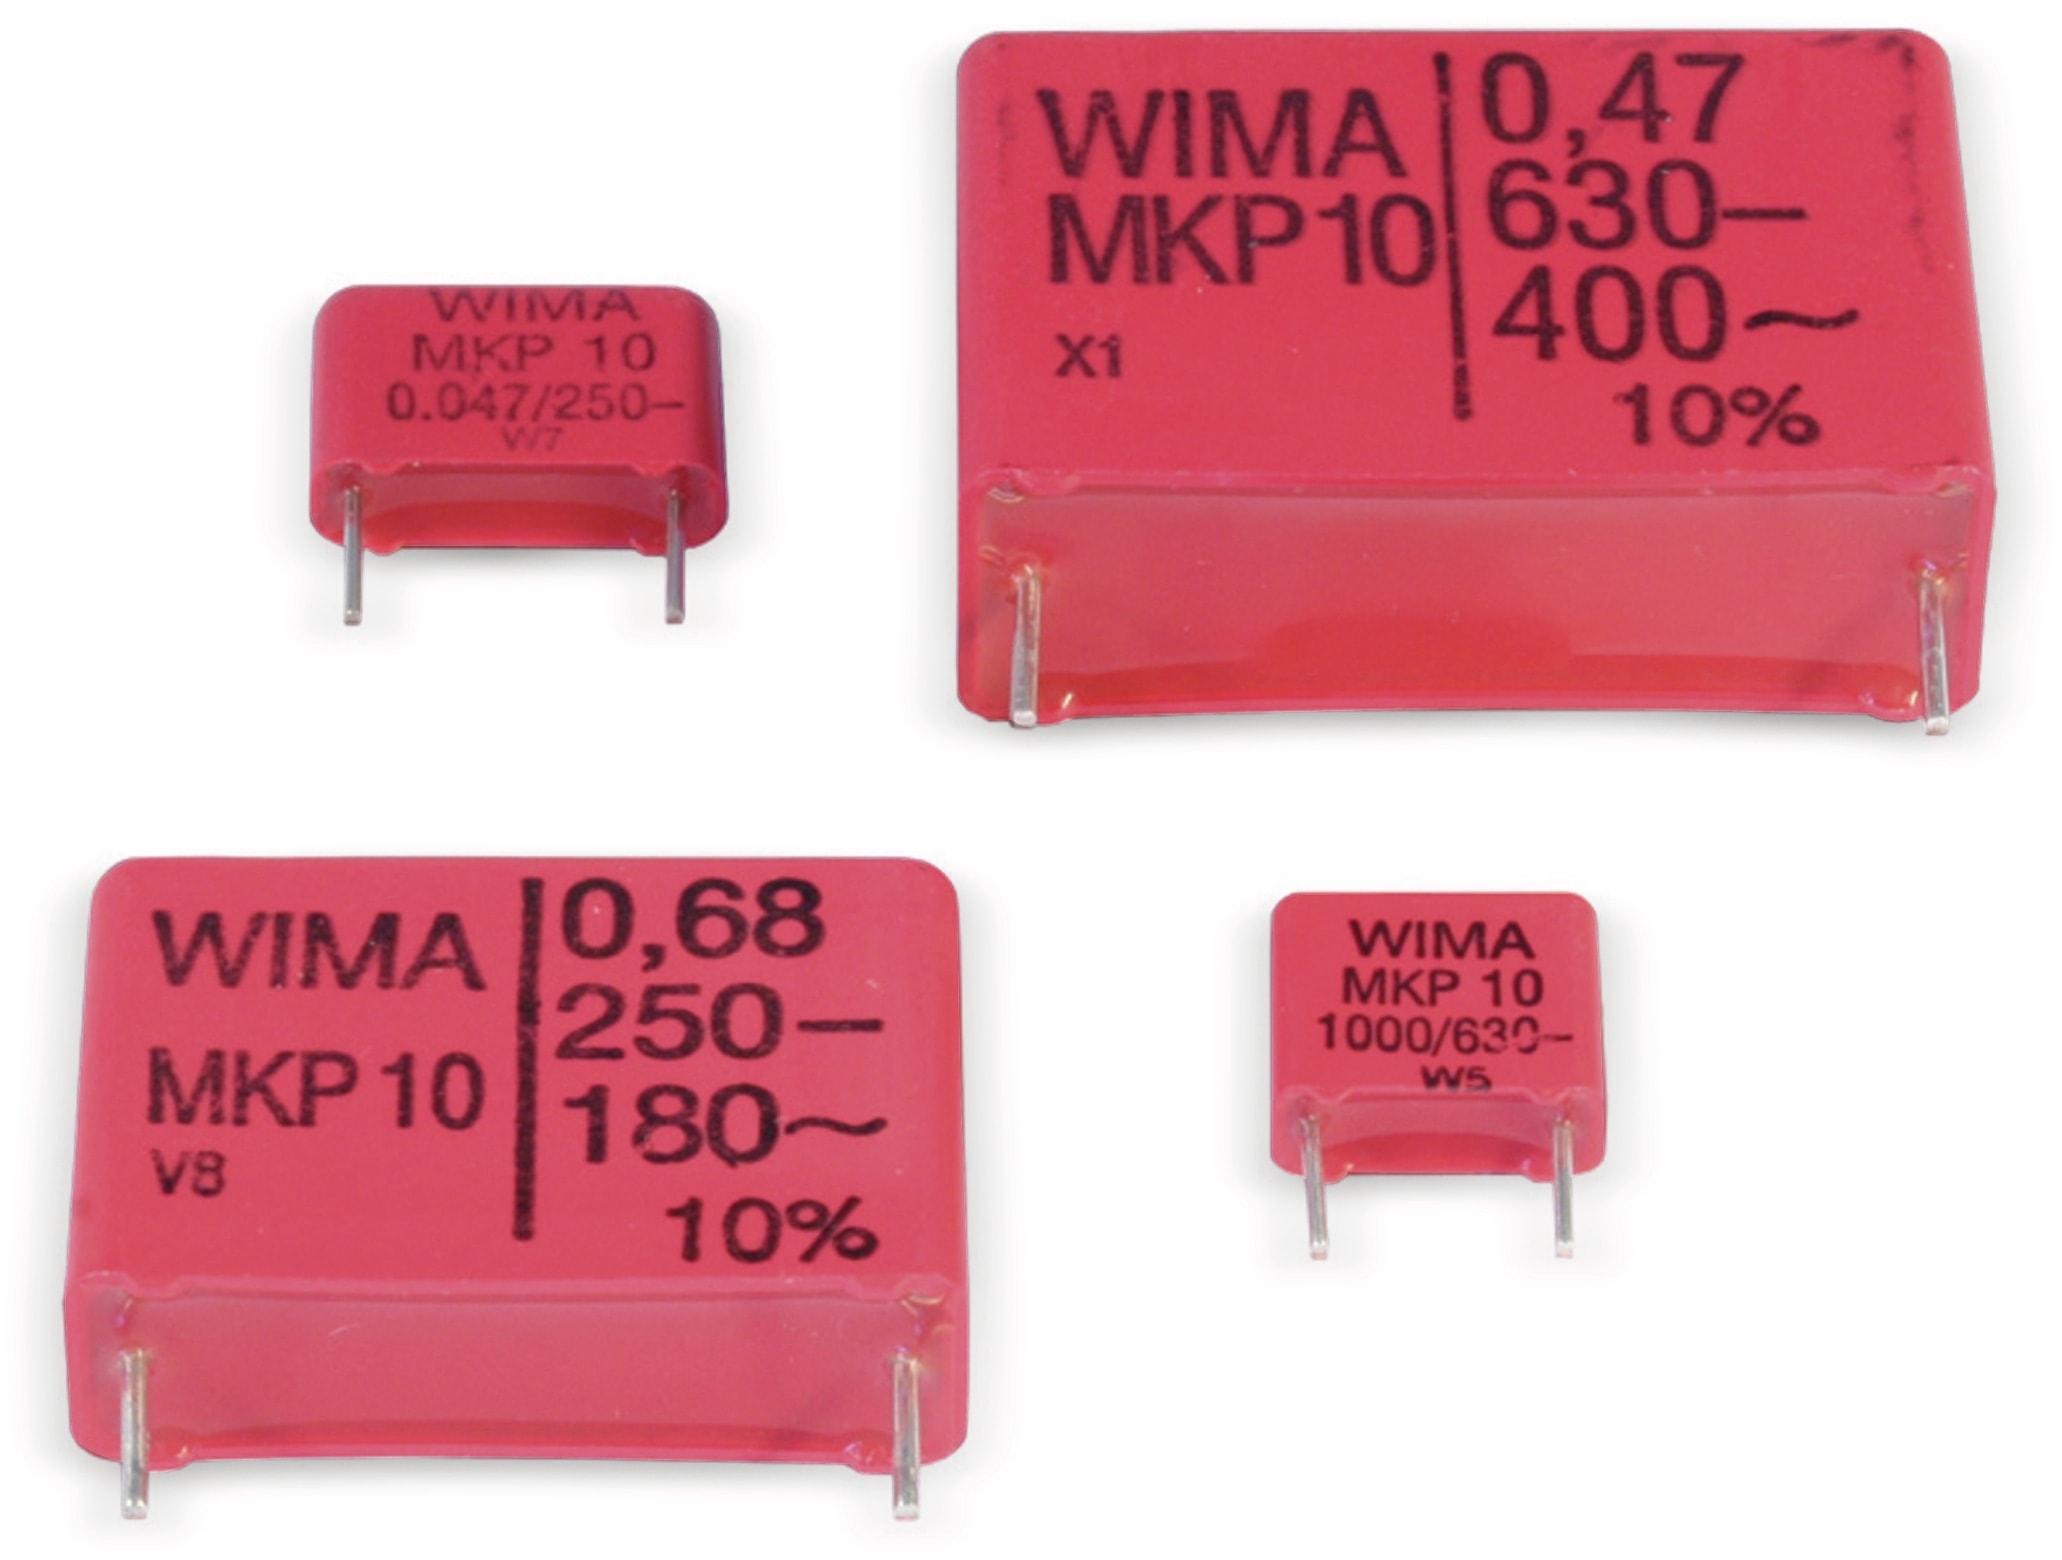 WIMA Folienkondensator, 1µF, 630V